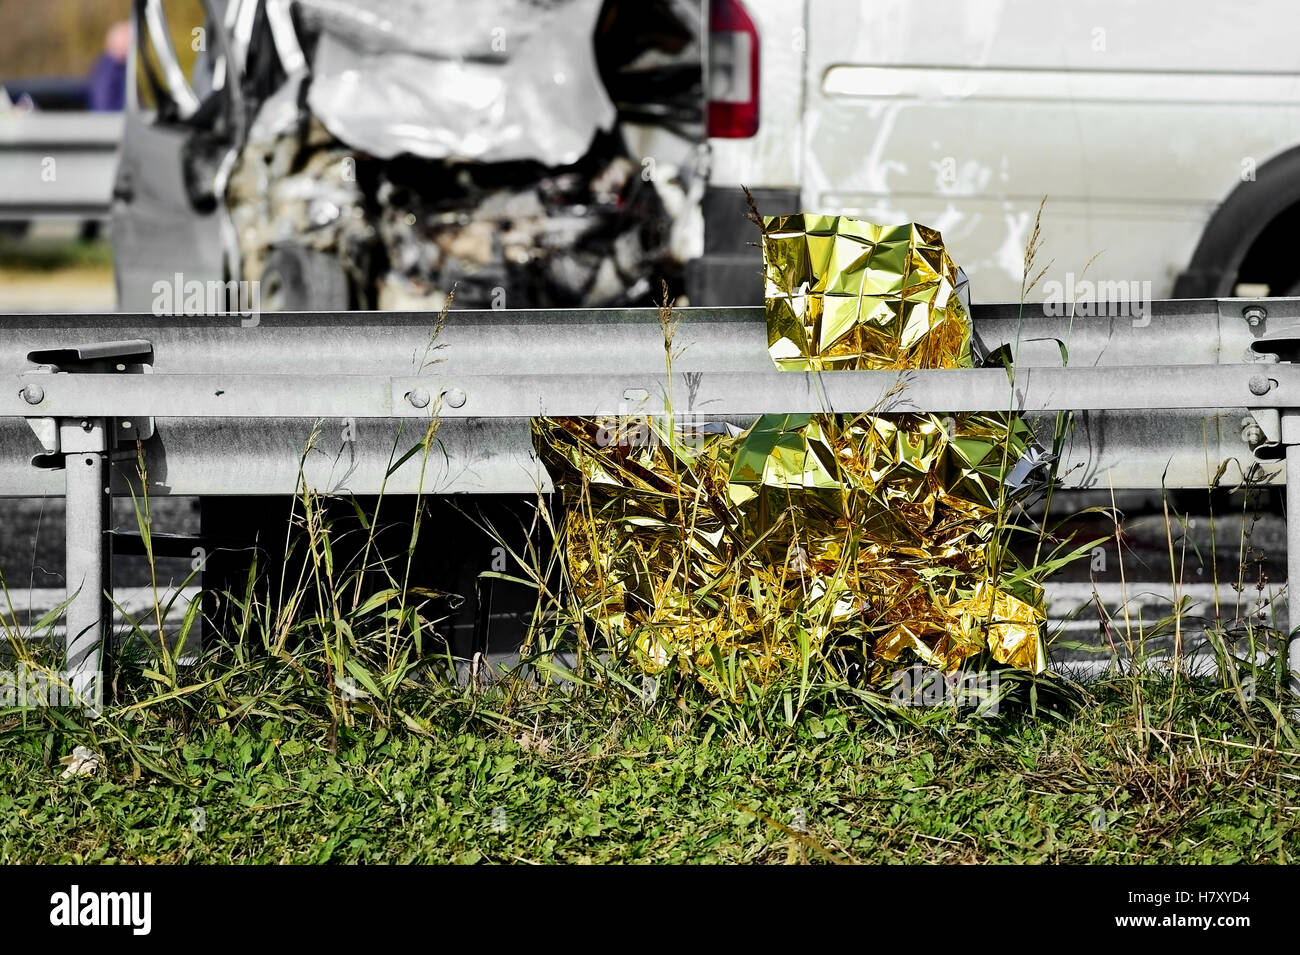 Détail avec la survie d'aluminium couverture à une voiture de l'accident Banque D'Images